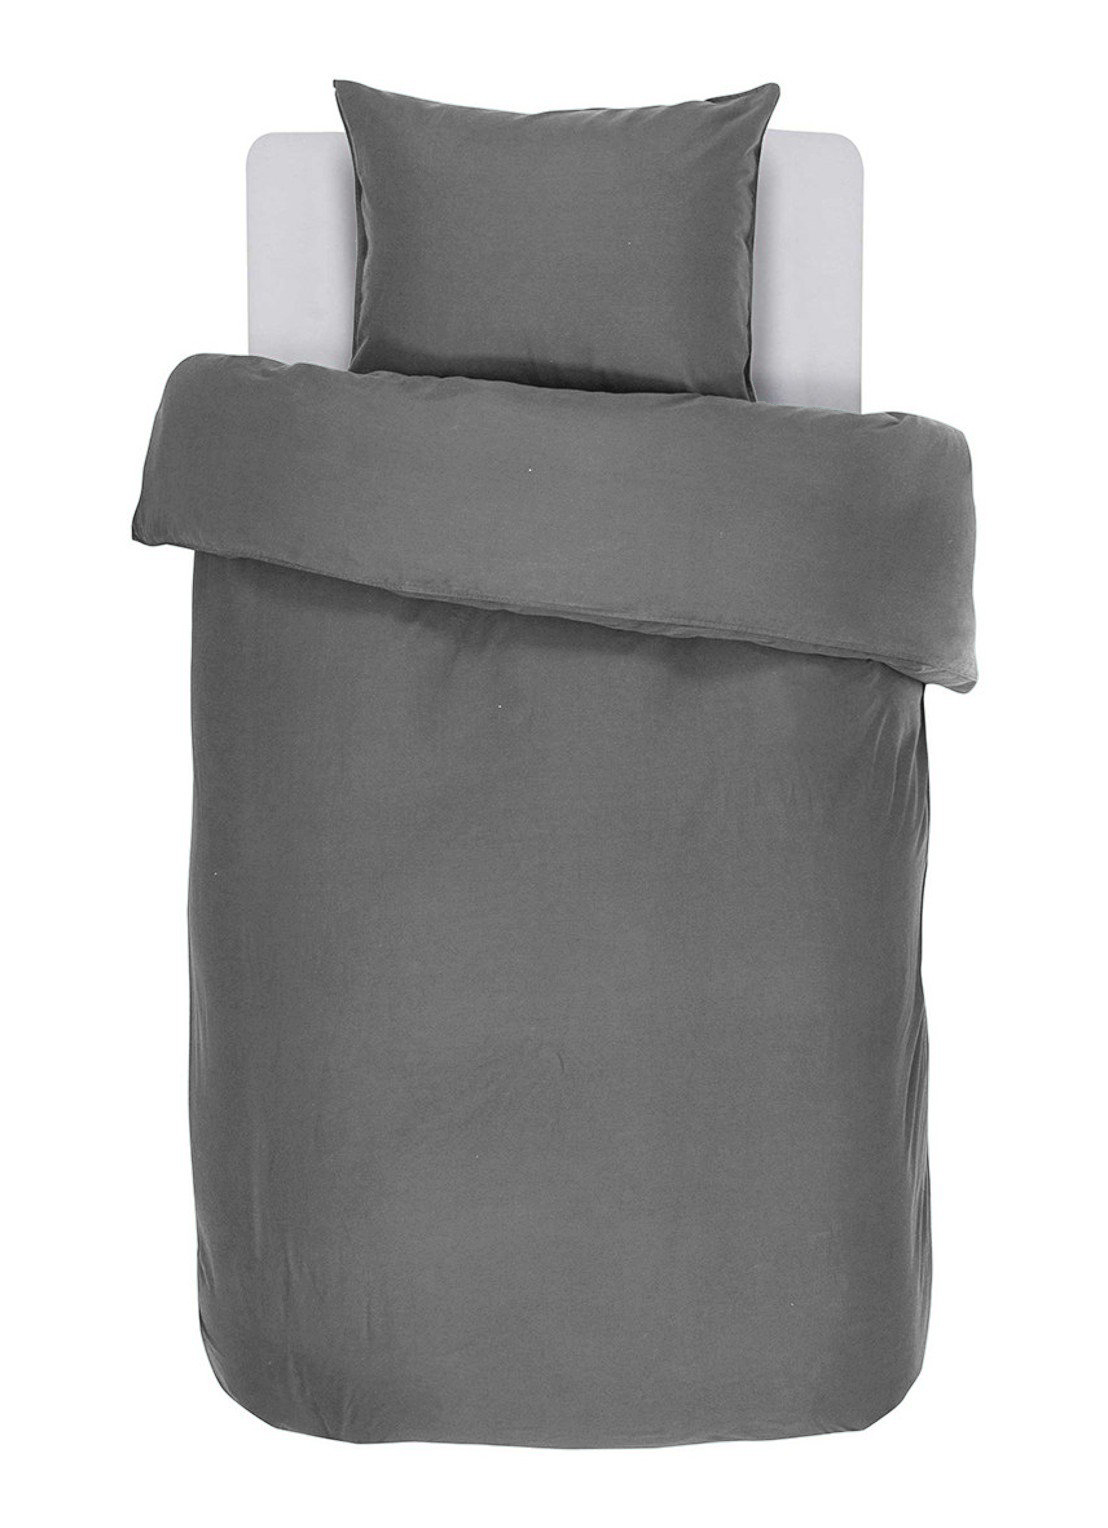 Housse de couette  IRIS, Stone washed uni coton, 140x200, gris